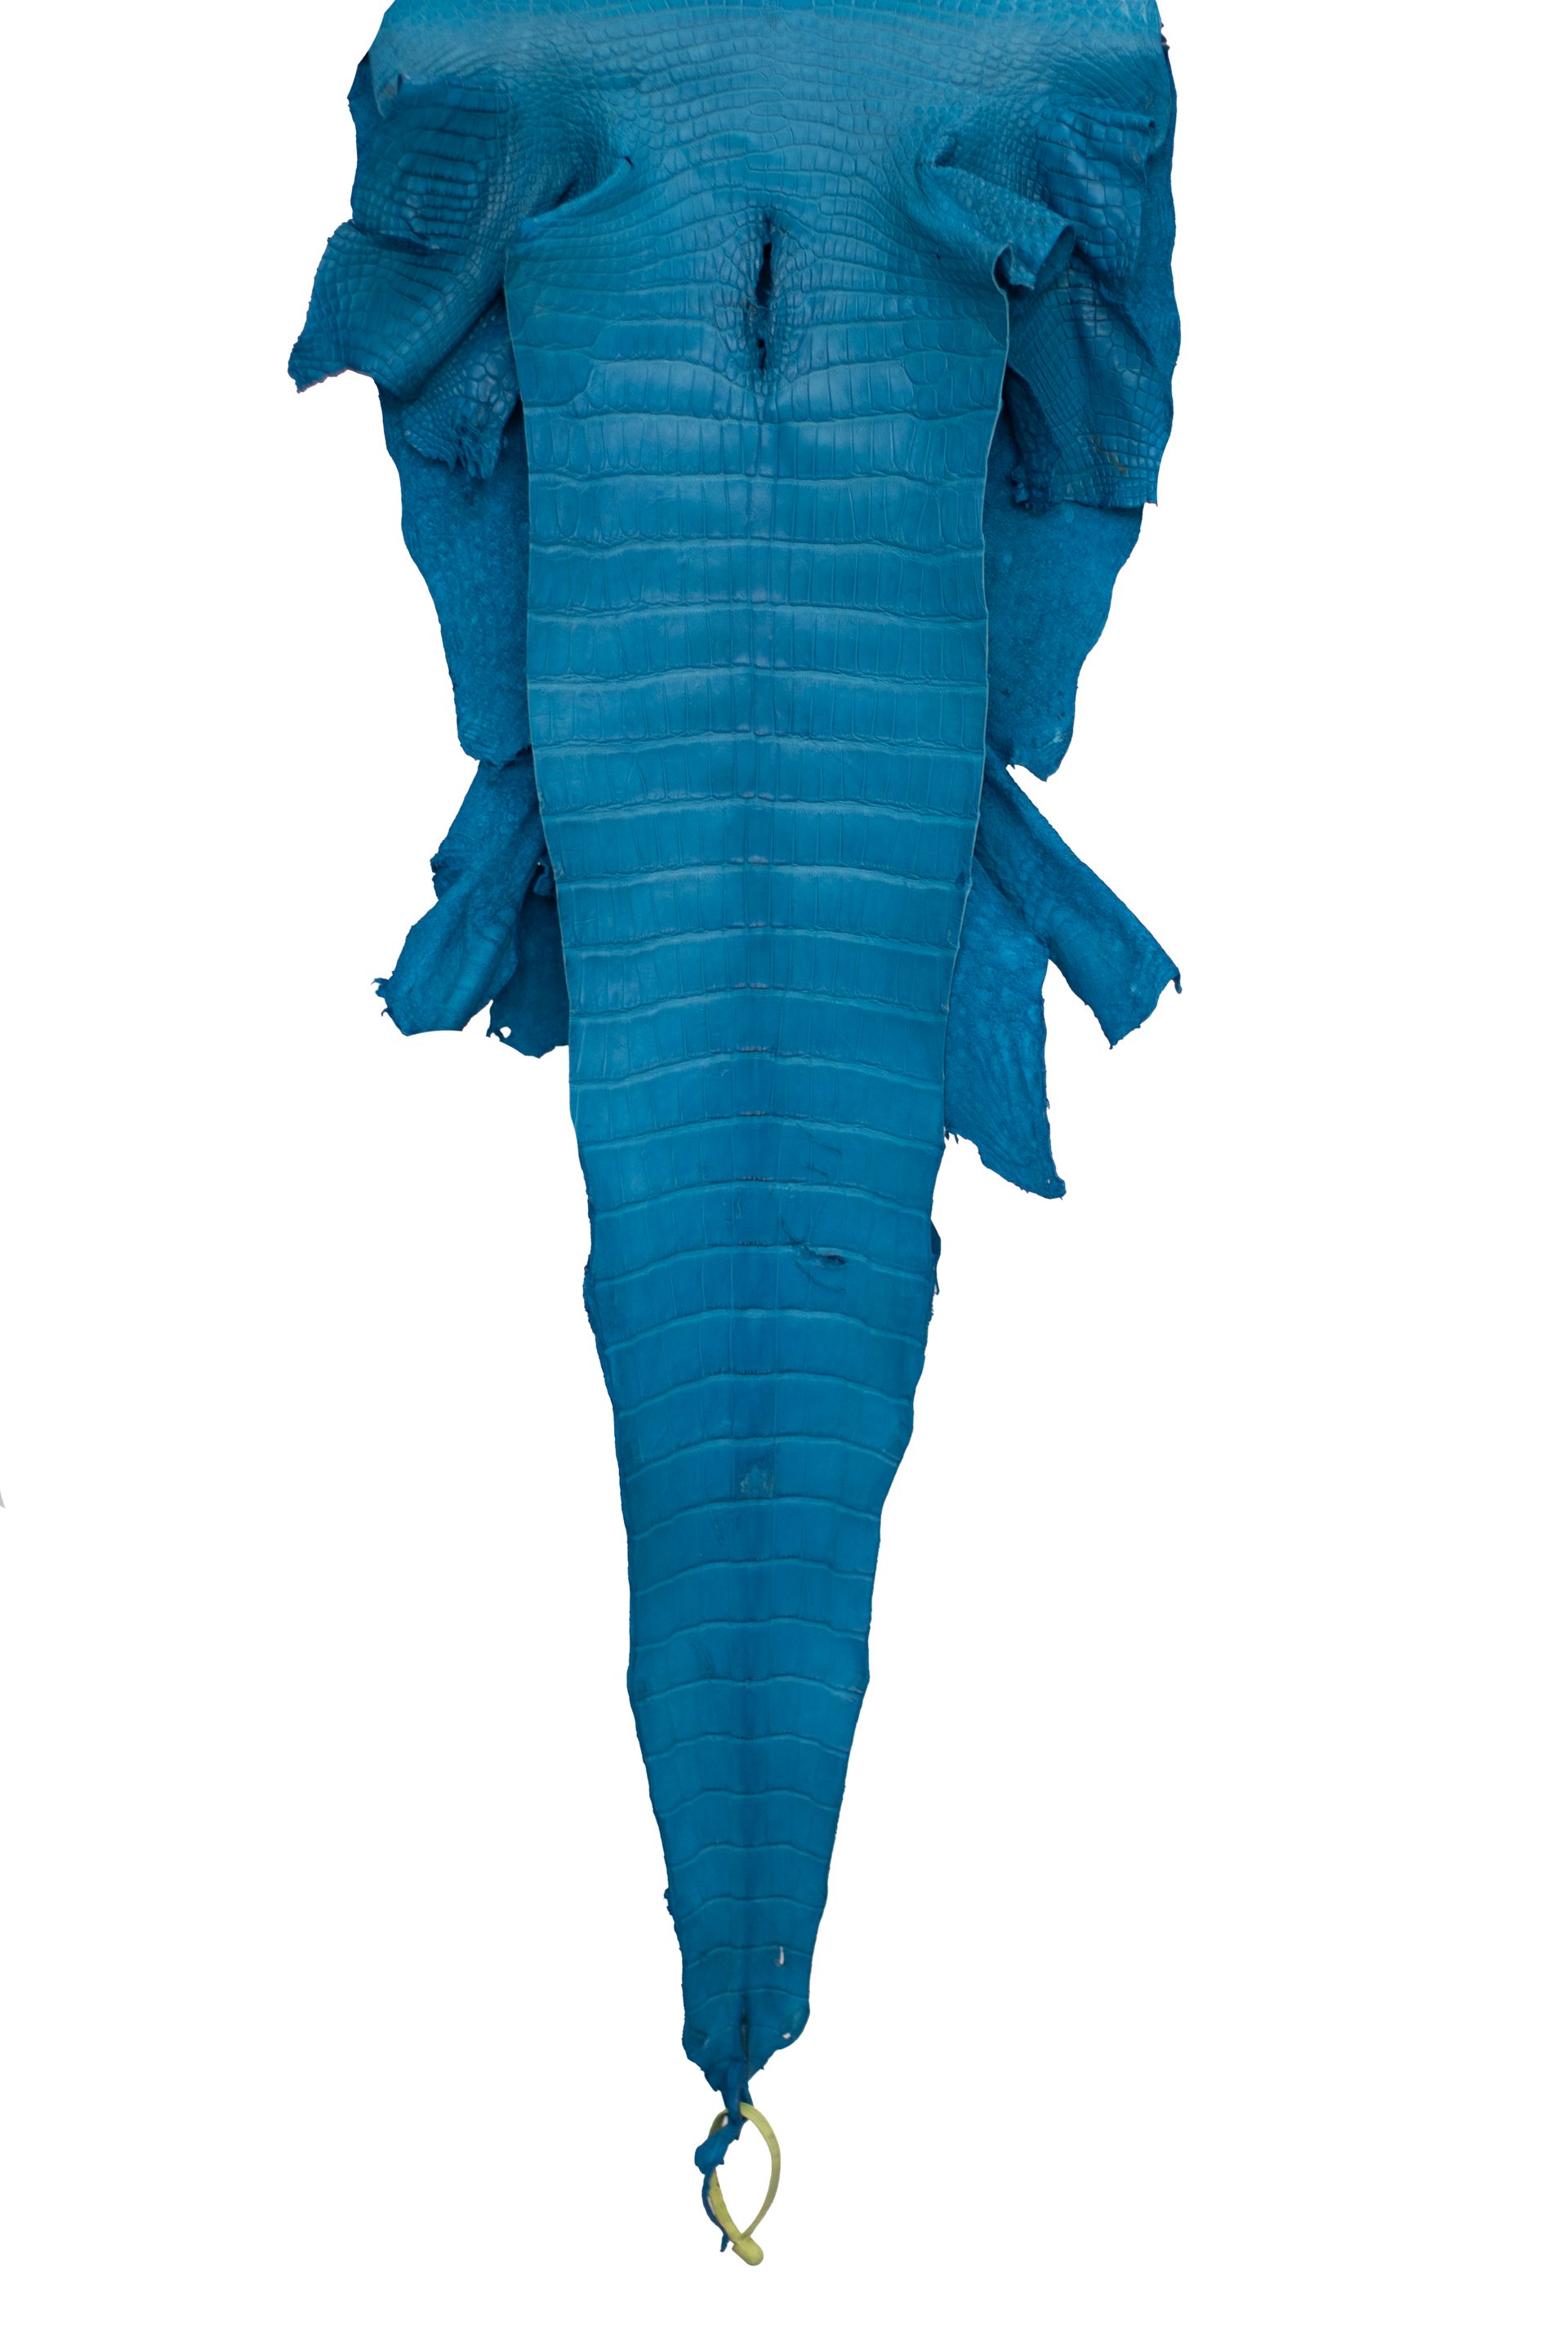 39 cm Grade 4/5 Ultramarine Matte Wild American Alligator Leather - Tag: LA22-0004197